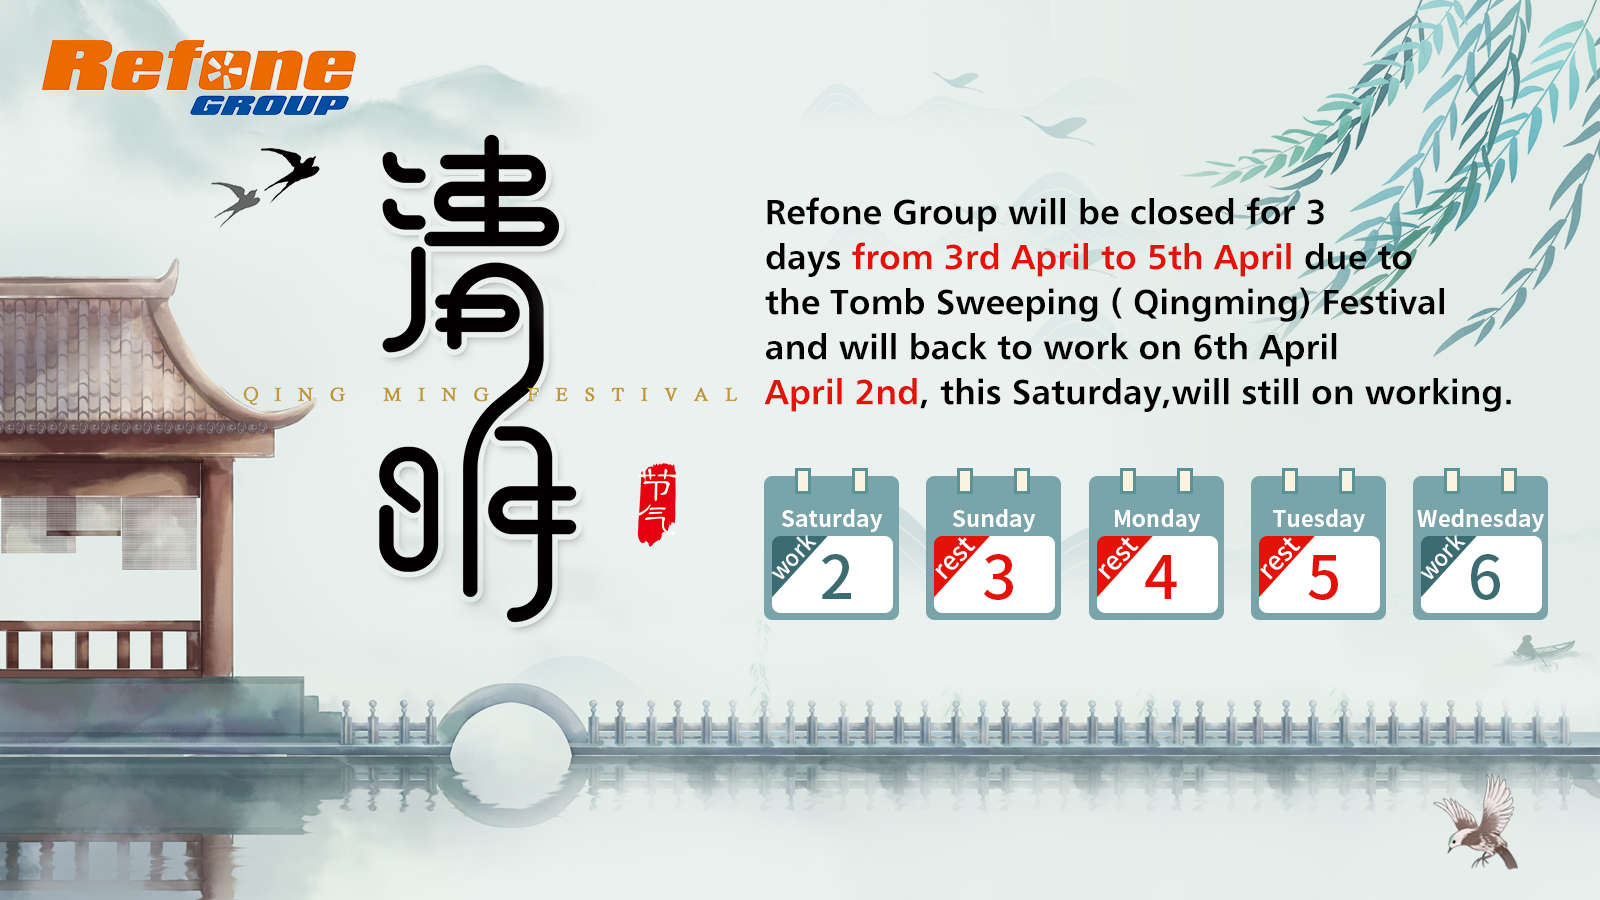 vacances du festival de qingming - groupe refoné